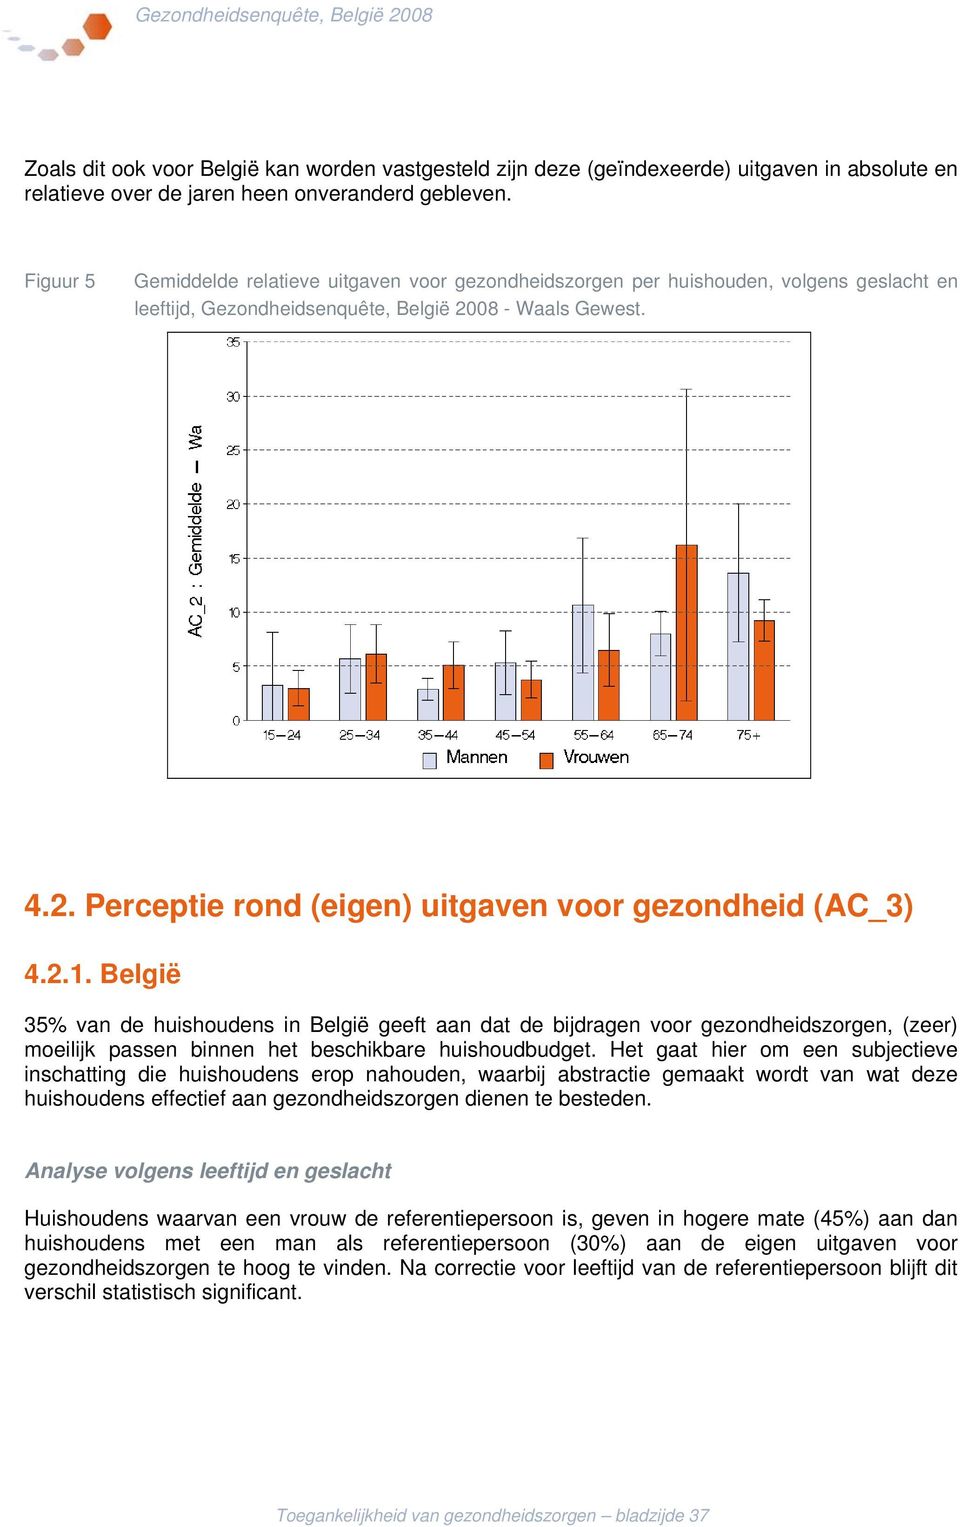 2.1. België 35% van de huishoudens in België geeft aan dat de bijdragen voor gezondheidszorgen, (zeer) moeilijk passen binnen het beschikbare huishoudbudget.